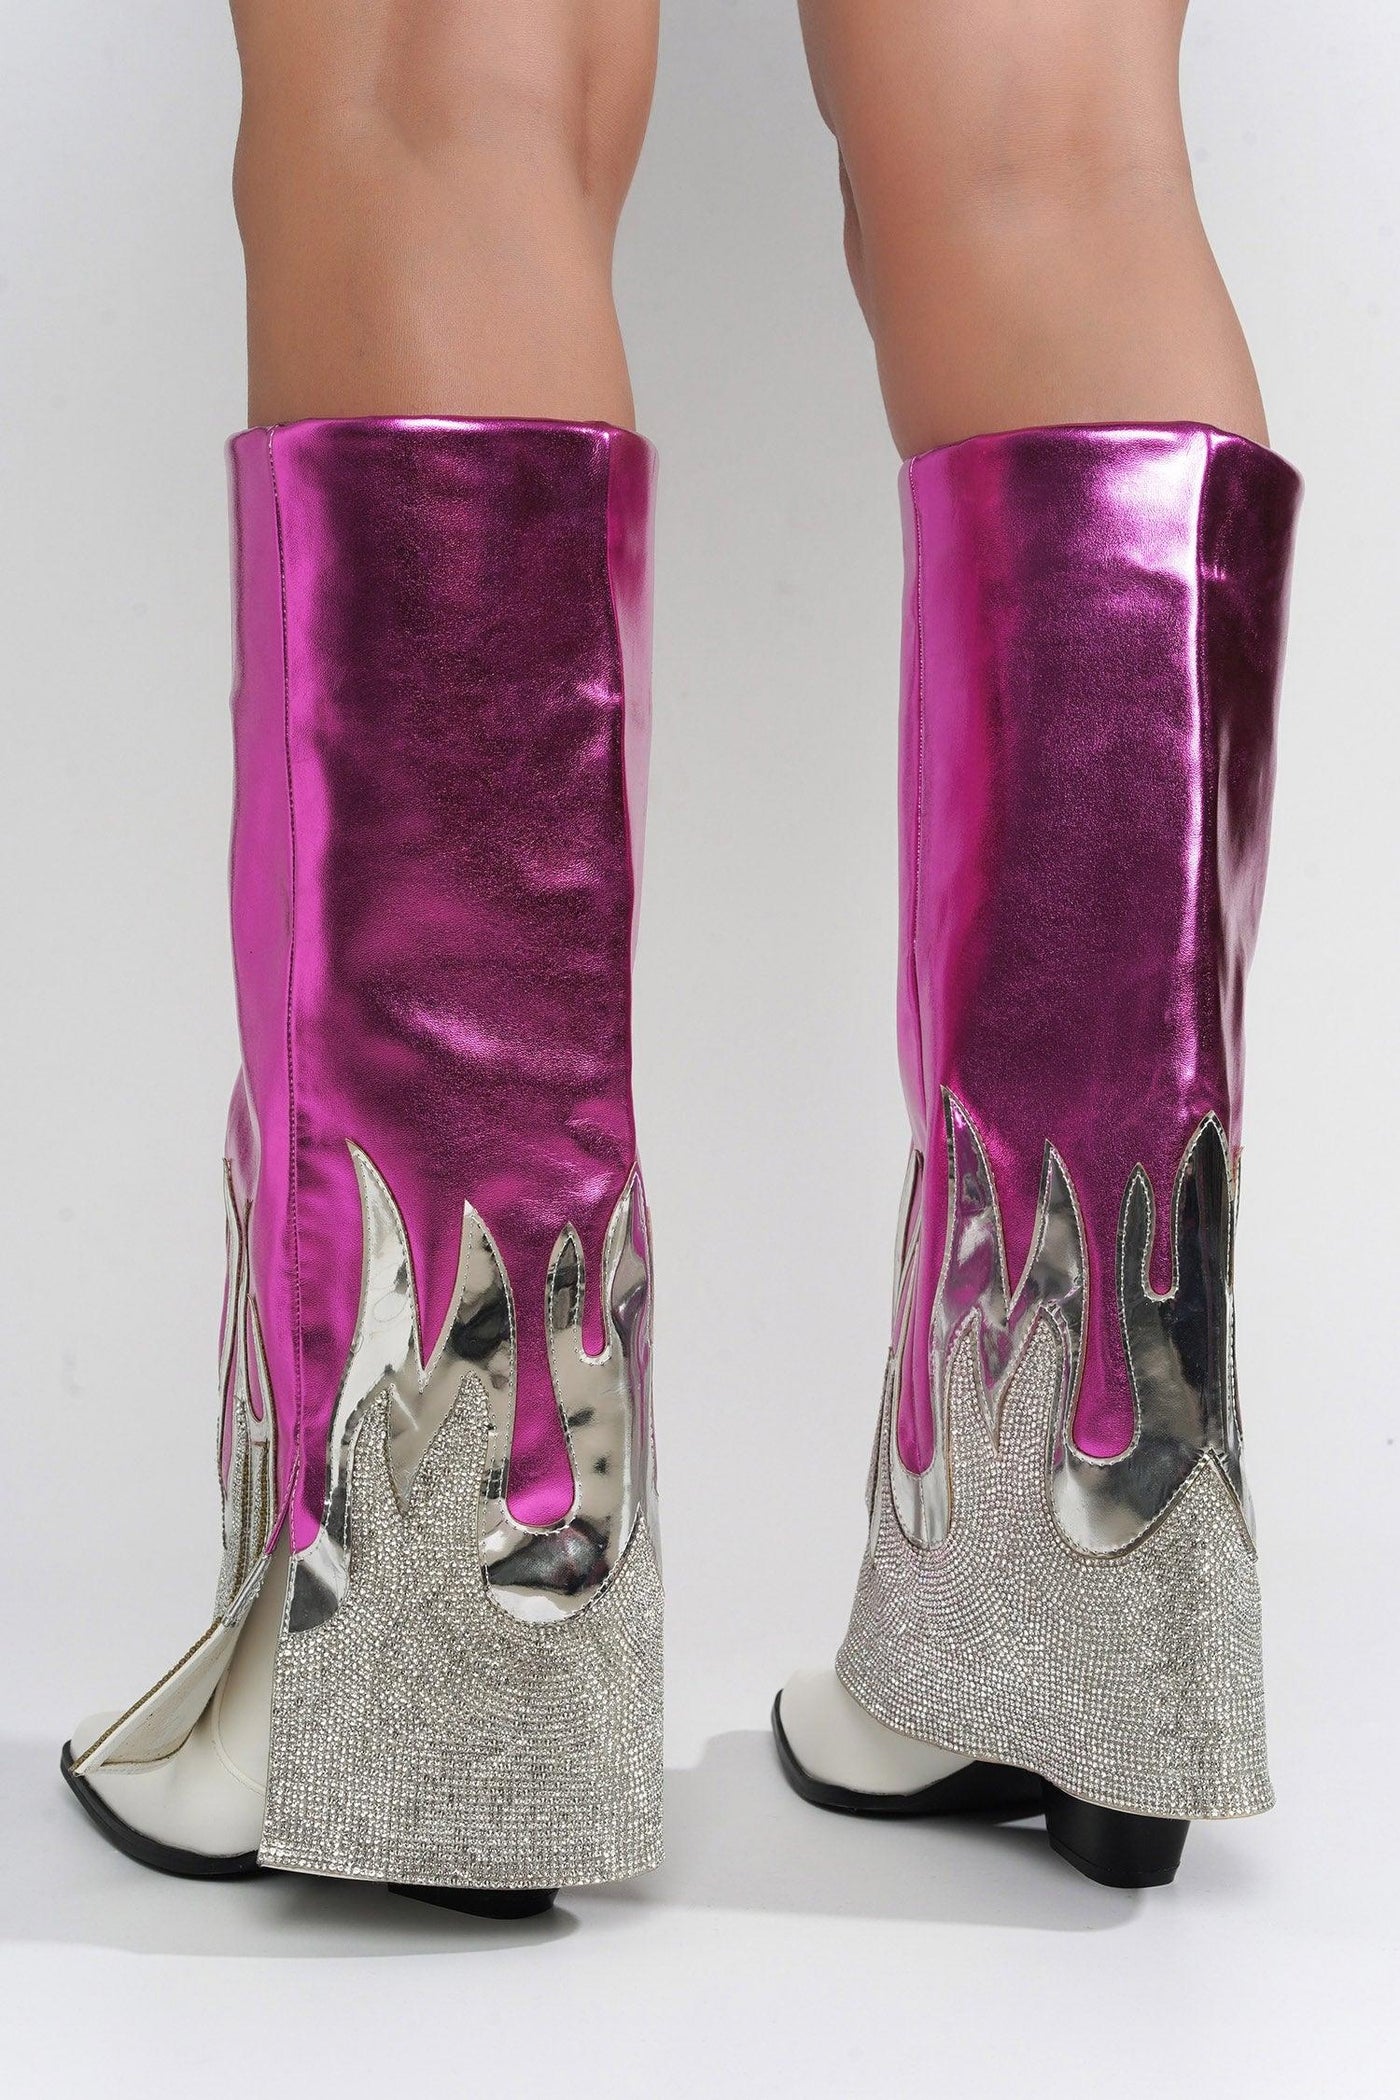 EMERSYN - PINK Thigh High Boots - AMIClubwear